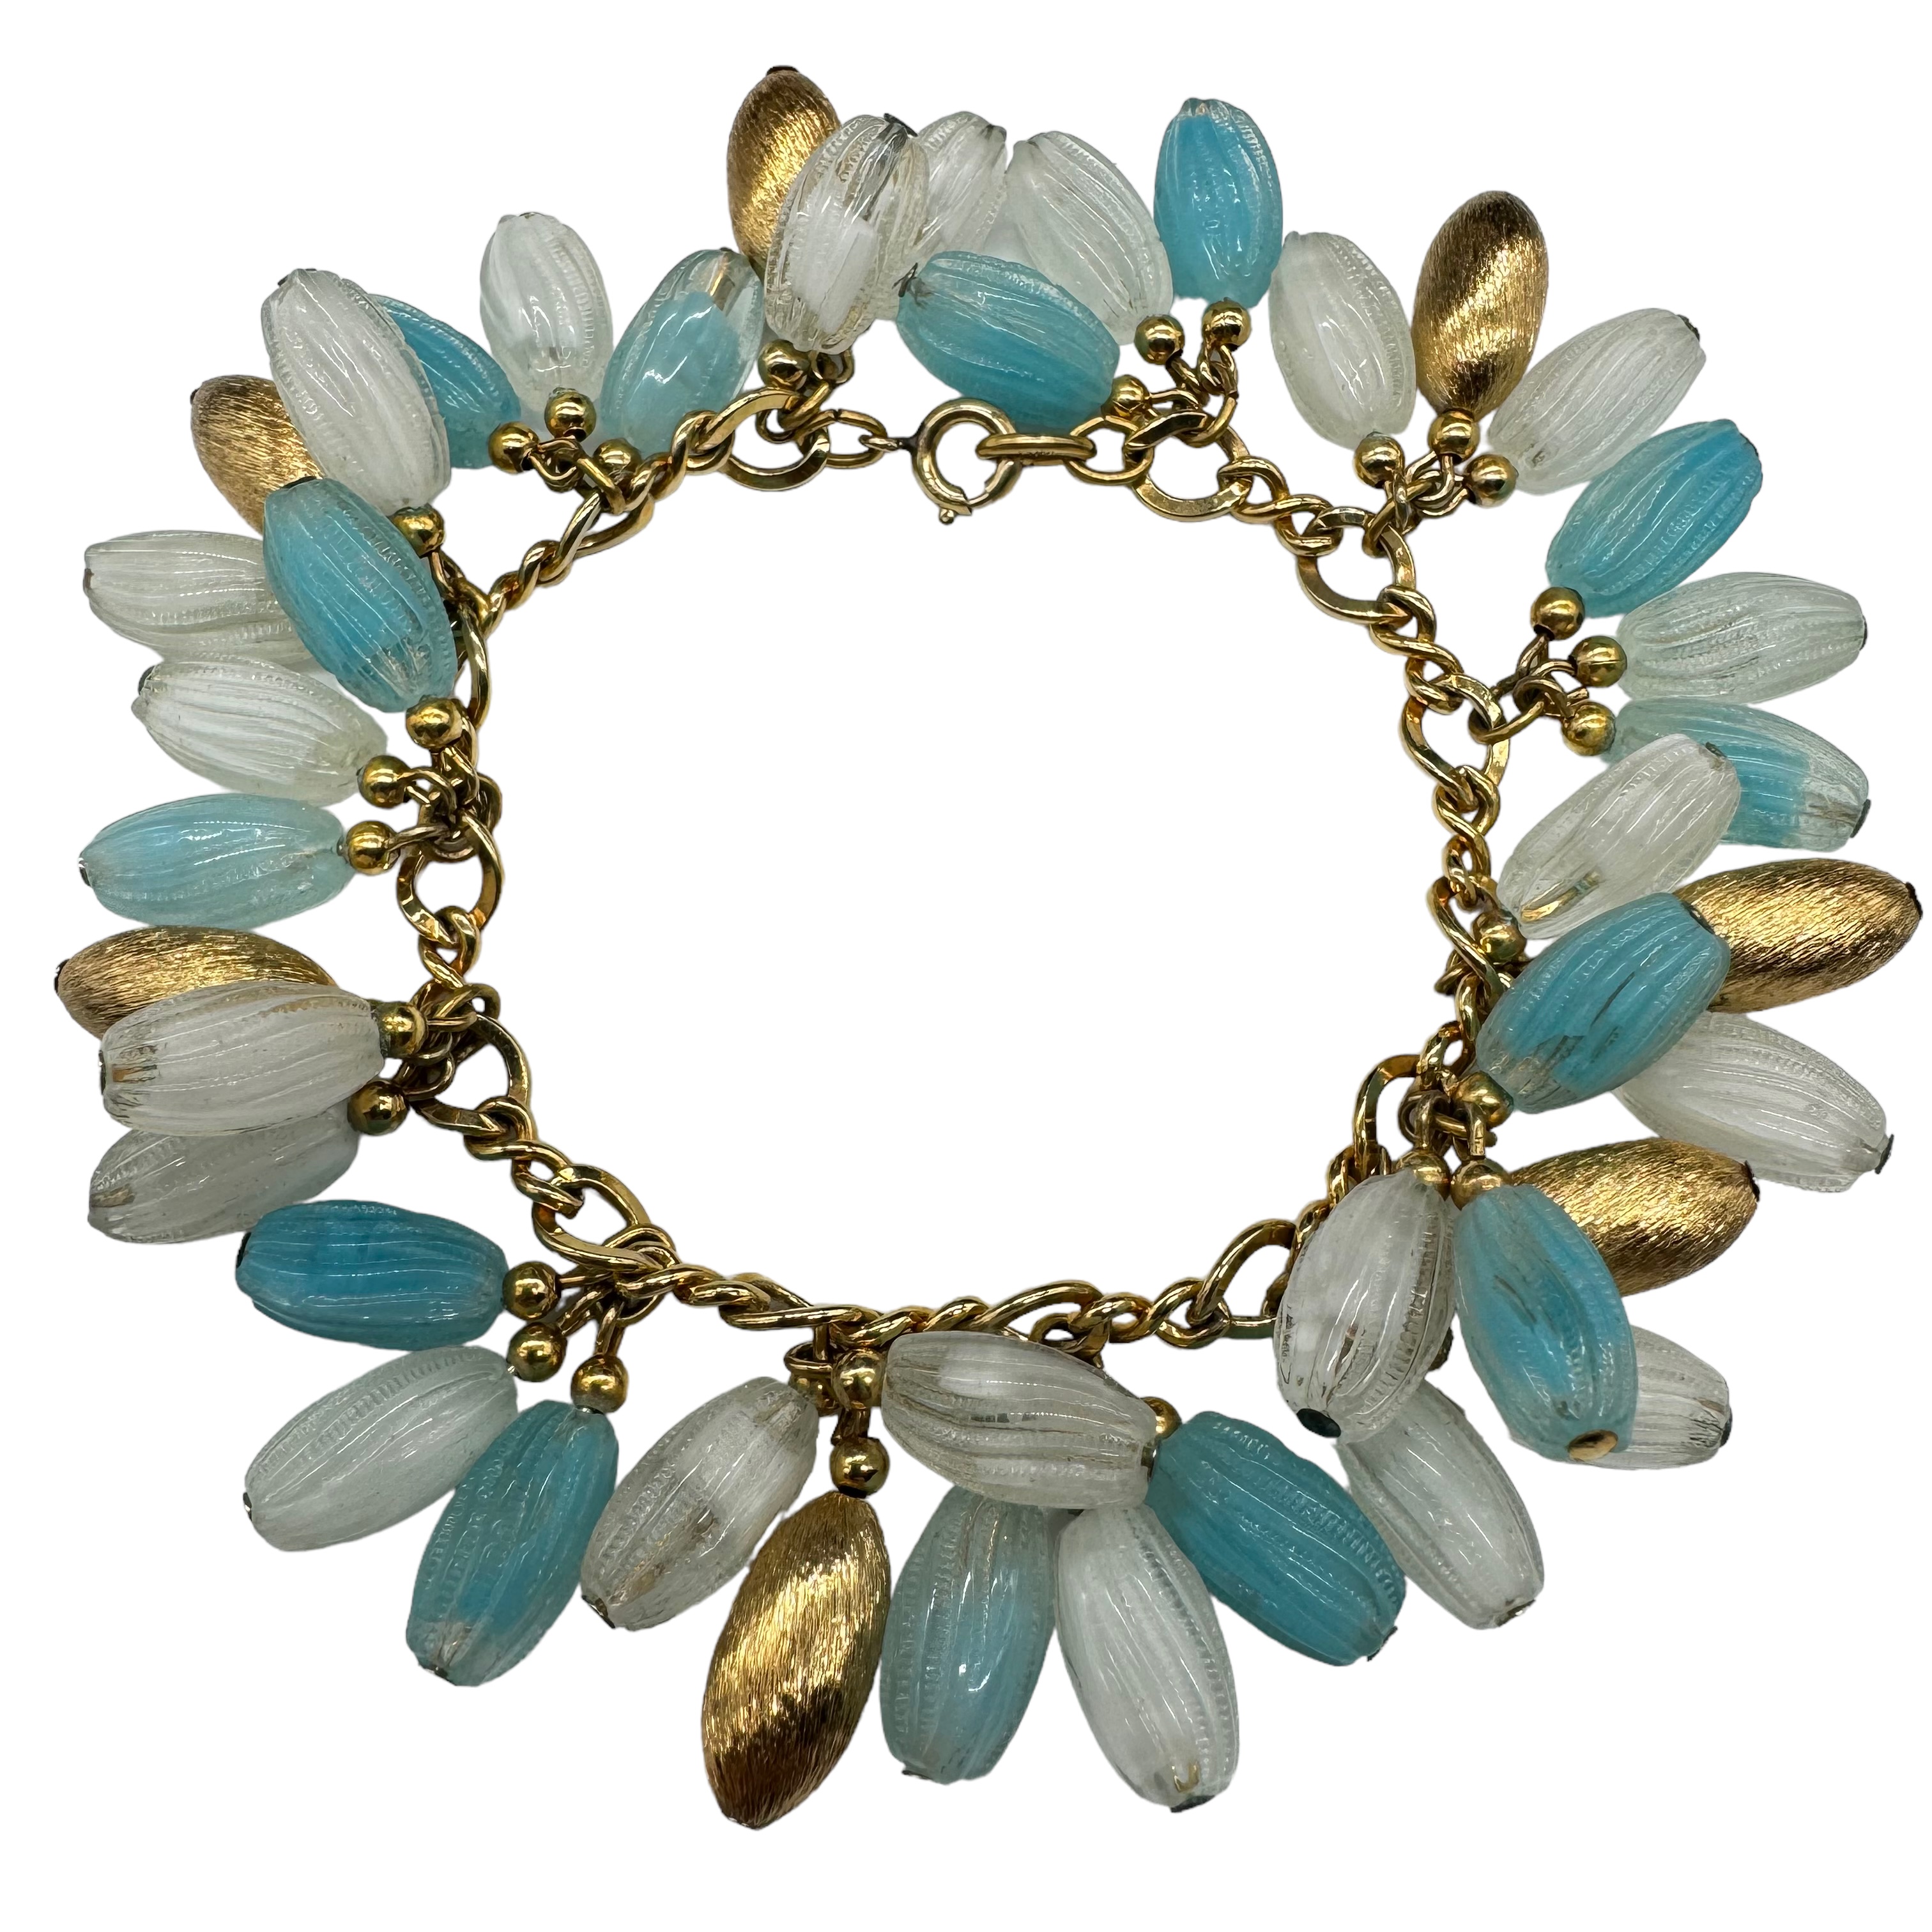 Rare Napier 1960s blue glass charm bracelet.